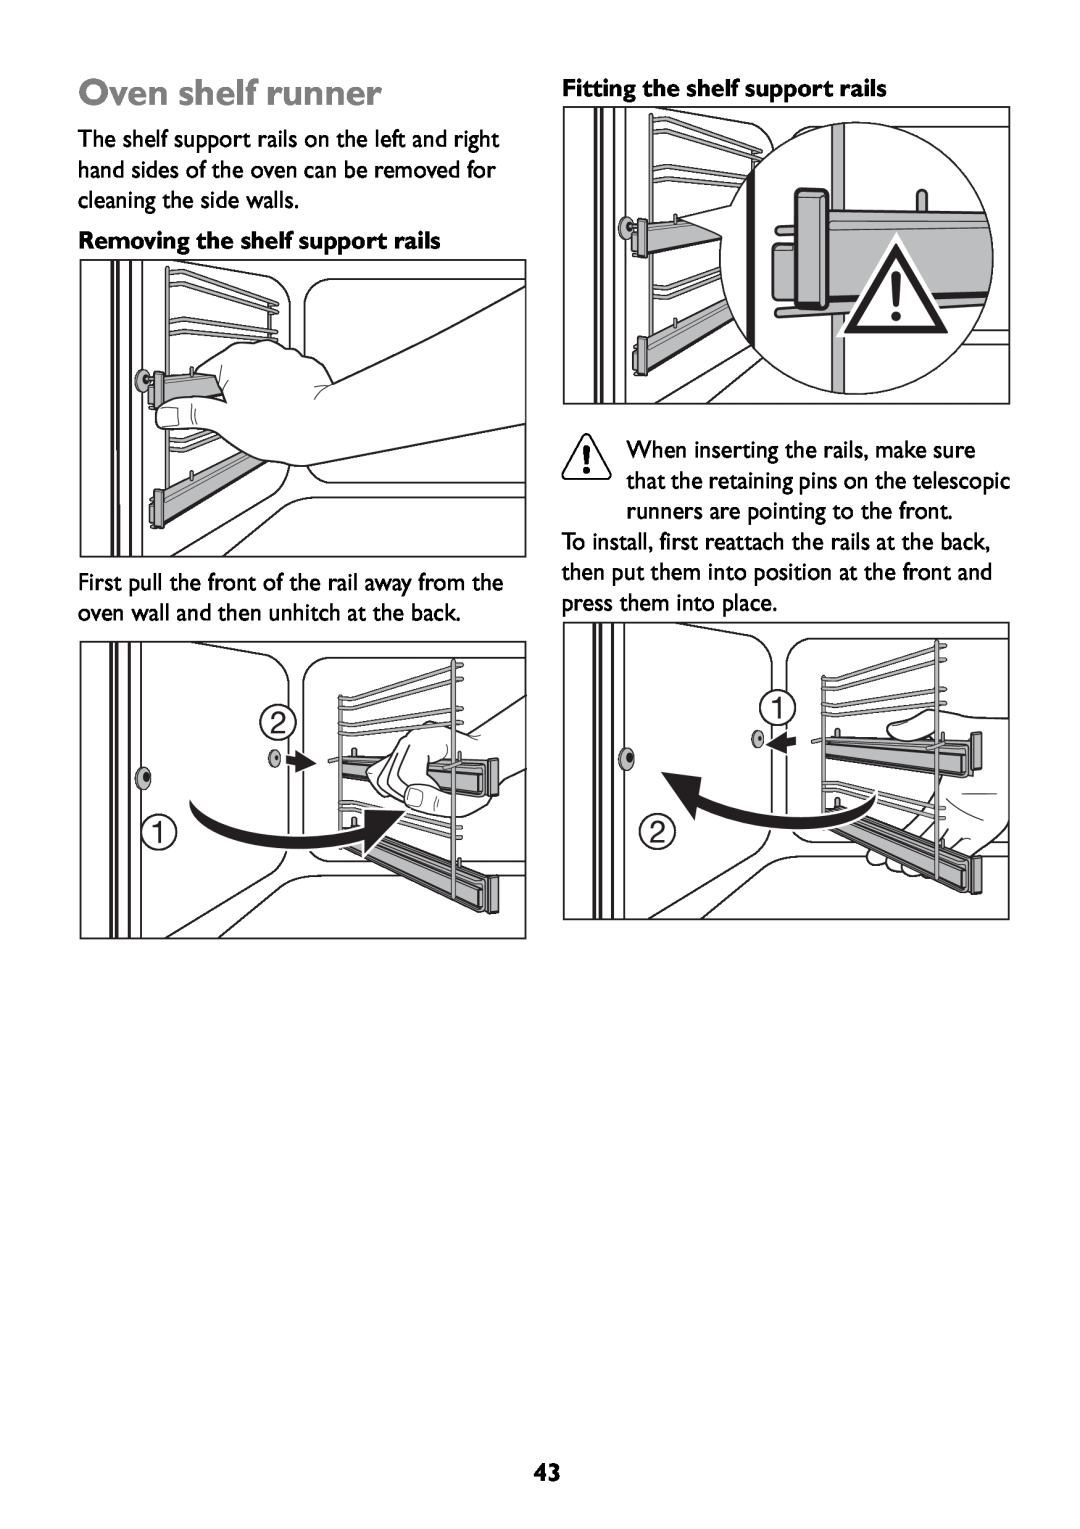 John Lewis JLBIOS609 manual Oven shelf runner, Removing the shelf support rails, Fitting the shelf support rails 